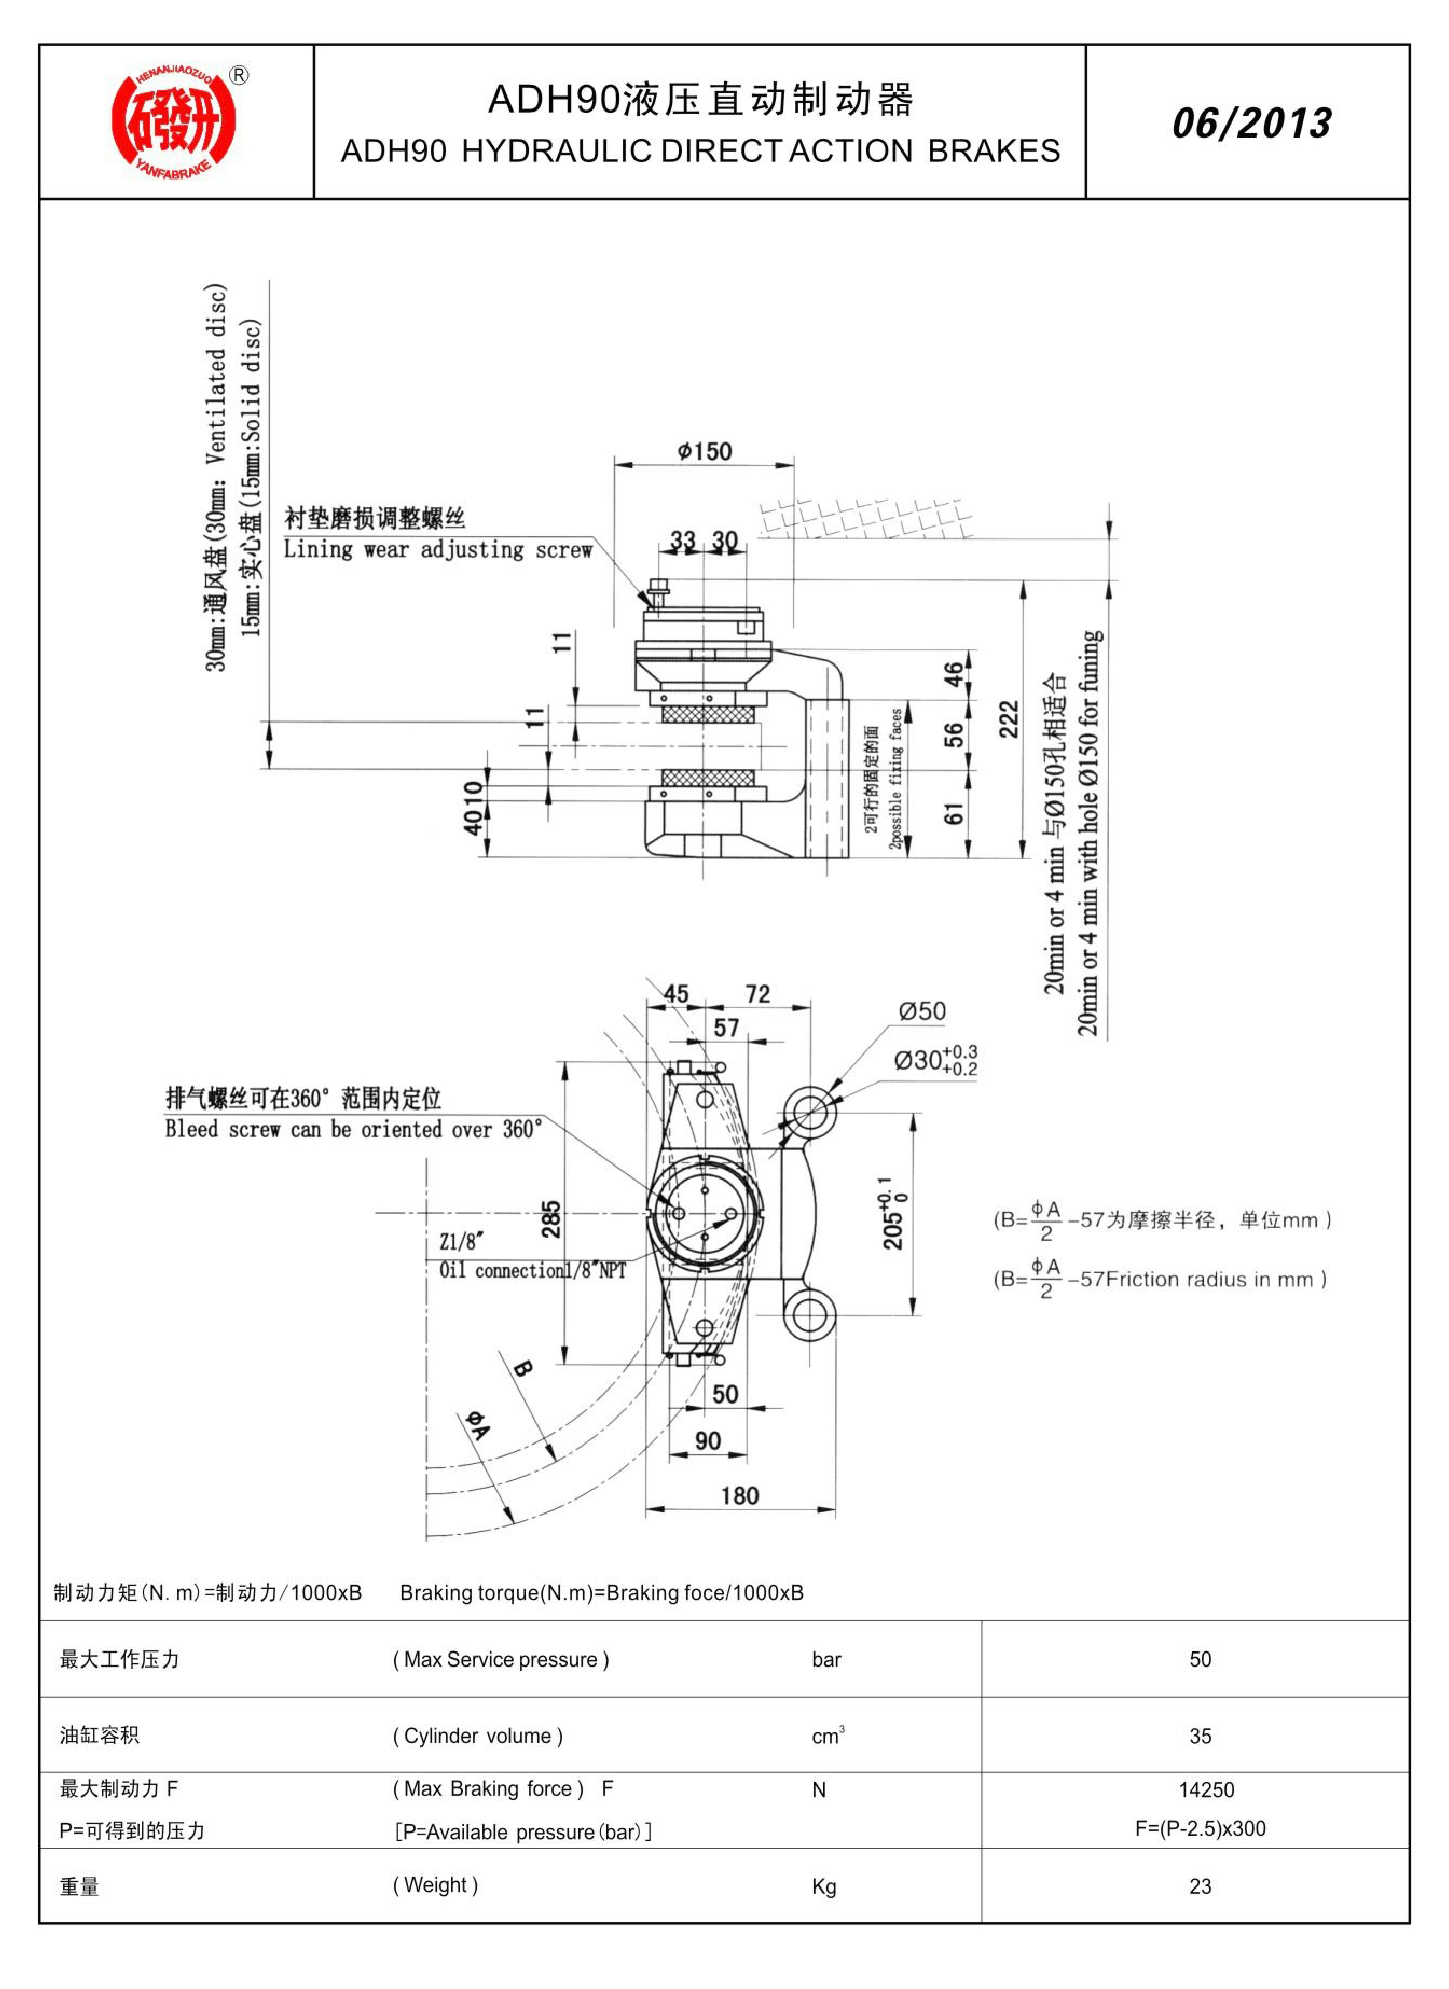 1_焦作市研發制動器有限公司-產品樣本(1)133